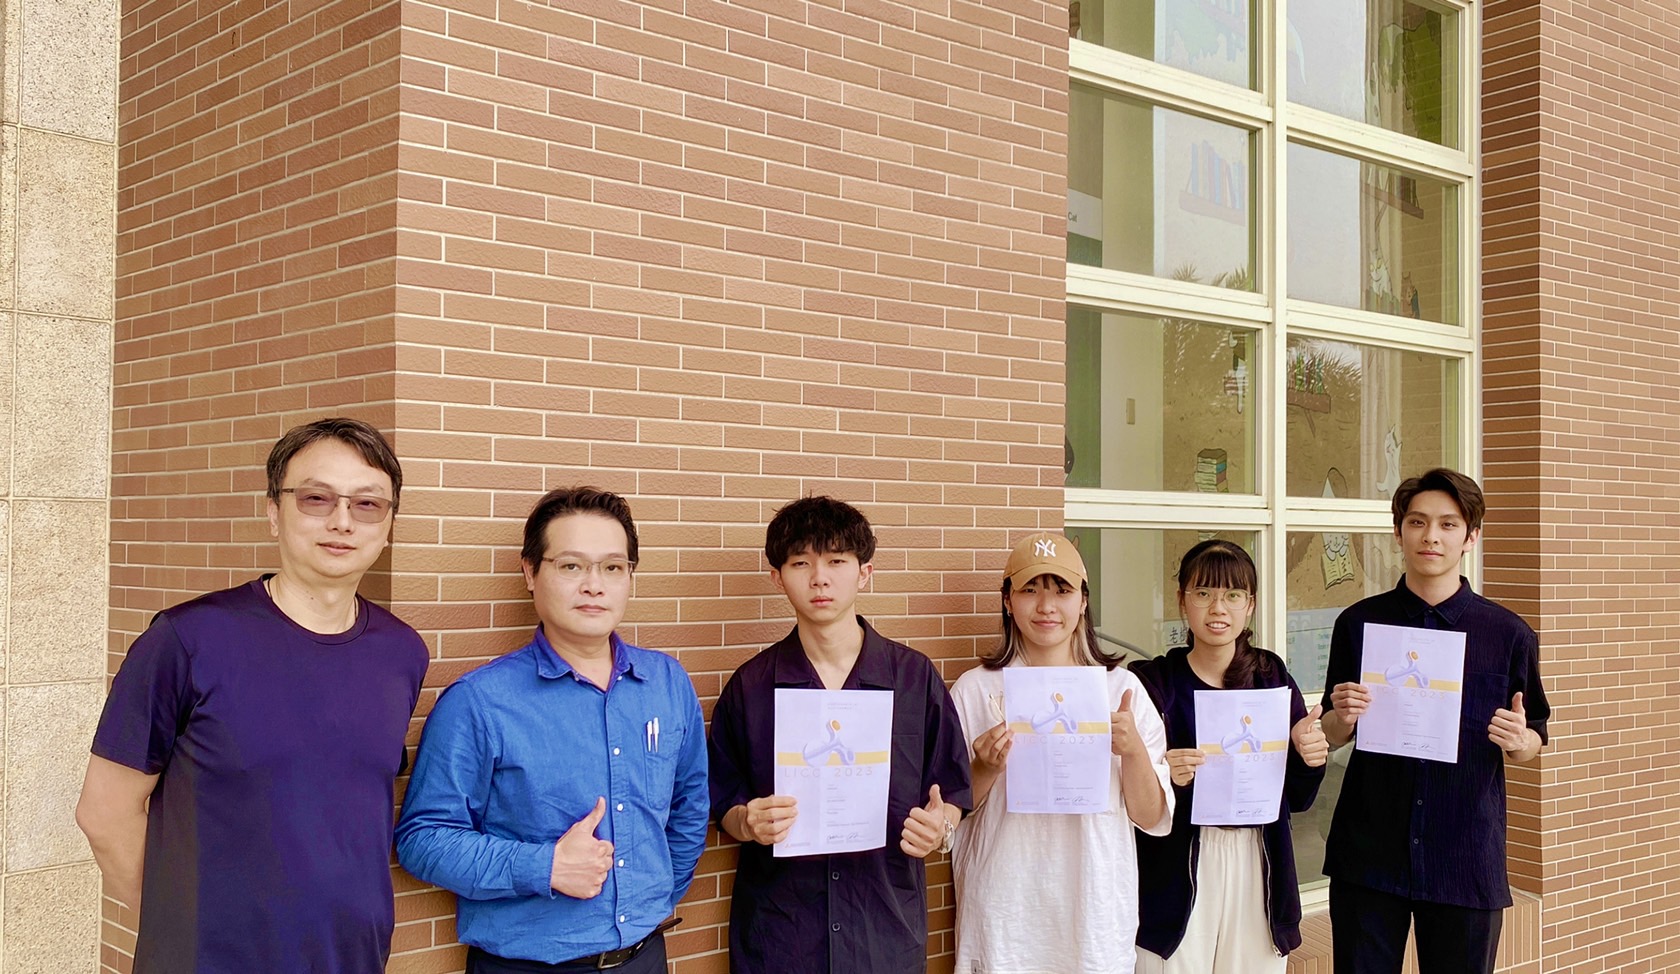 (from right to left) Asia University's Department of Interior Design students He-Xiang Chang, Yi-Tong Lin, Yu-Han Chen, Jia-Hao Zhang along with instructors Shi-Yuan Liu and Chih-Hua Wang